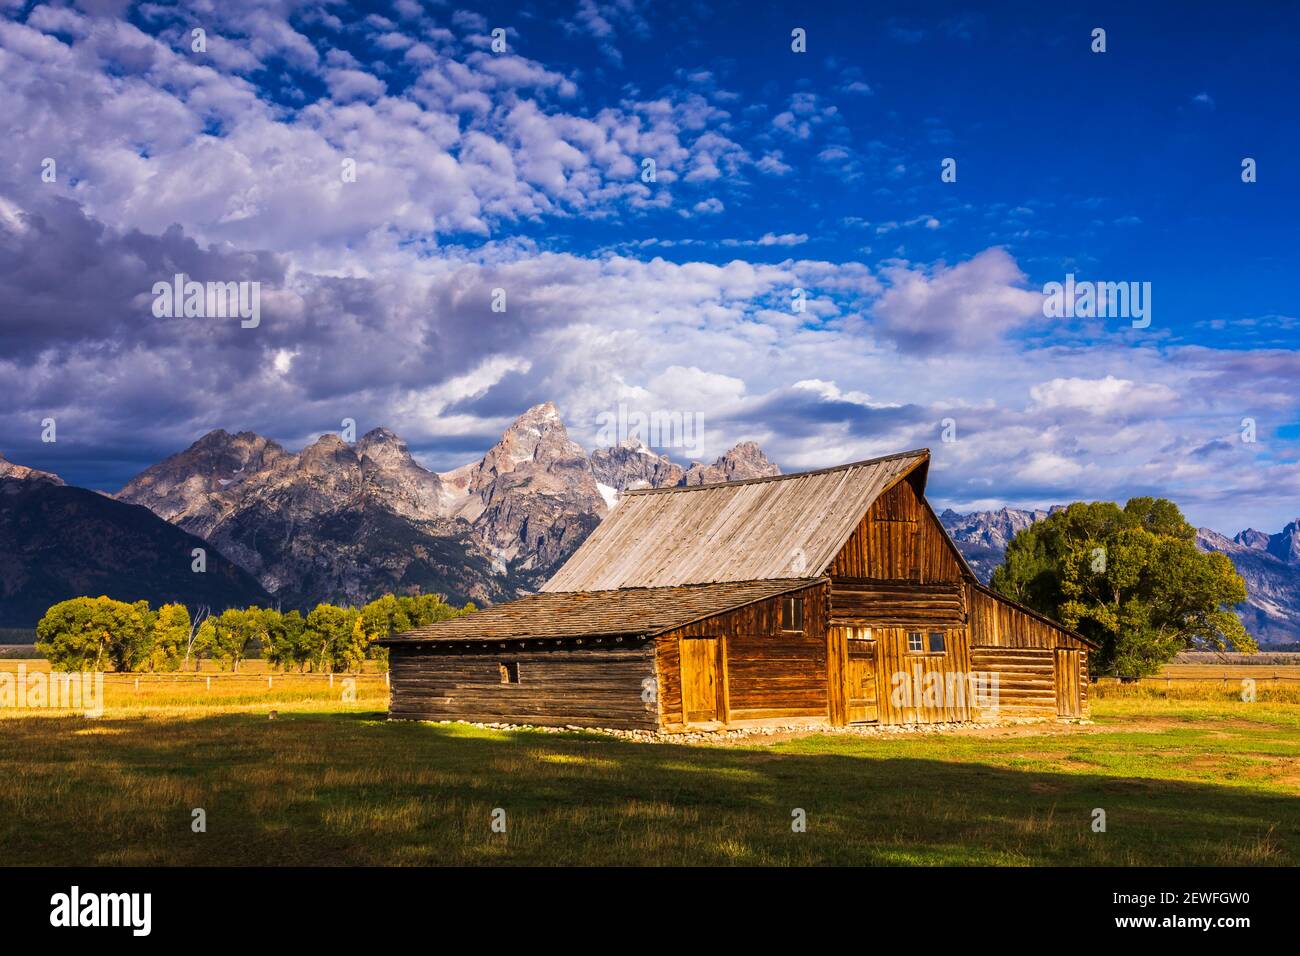 The Moulton Barn on Mormon Row, Grand Teton National Park, Wyoming USA Stockfoto